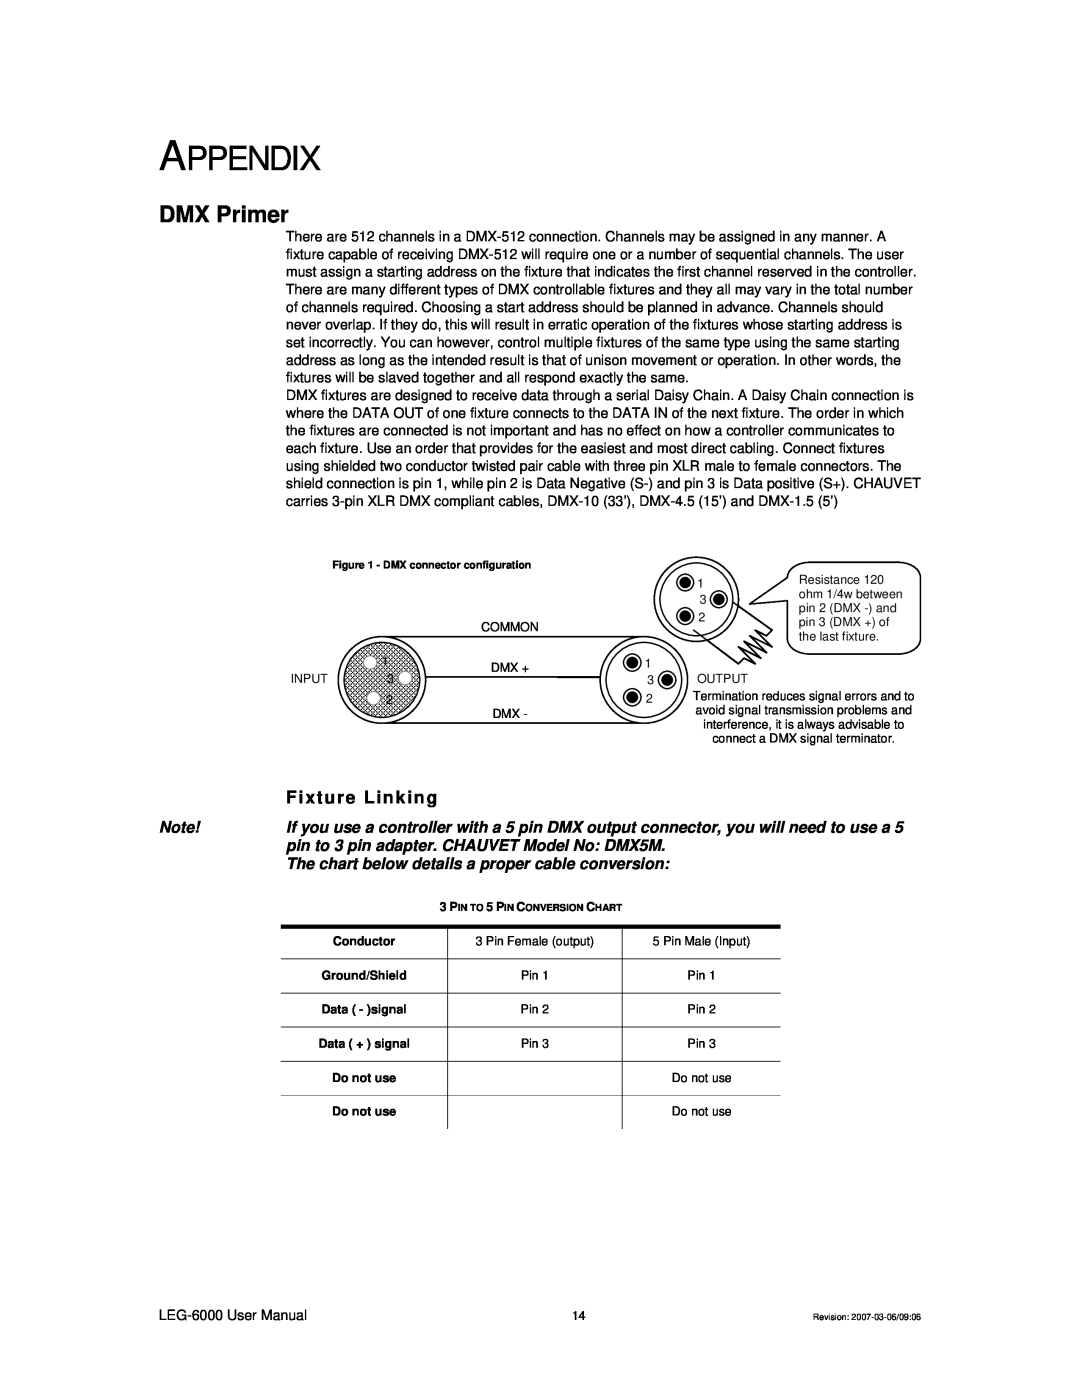 Chauvet LEG-6000, 6000X user manual Appendix, DMX Primer, Fixture Linking 